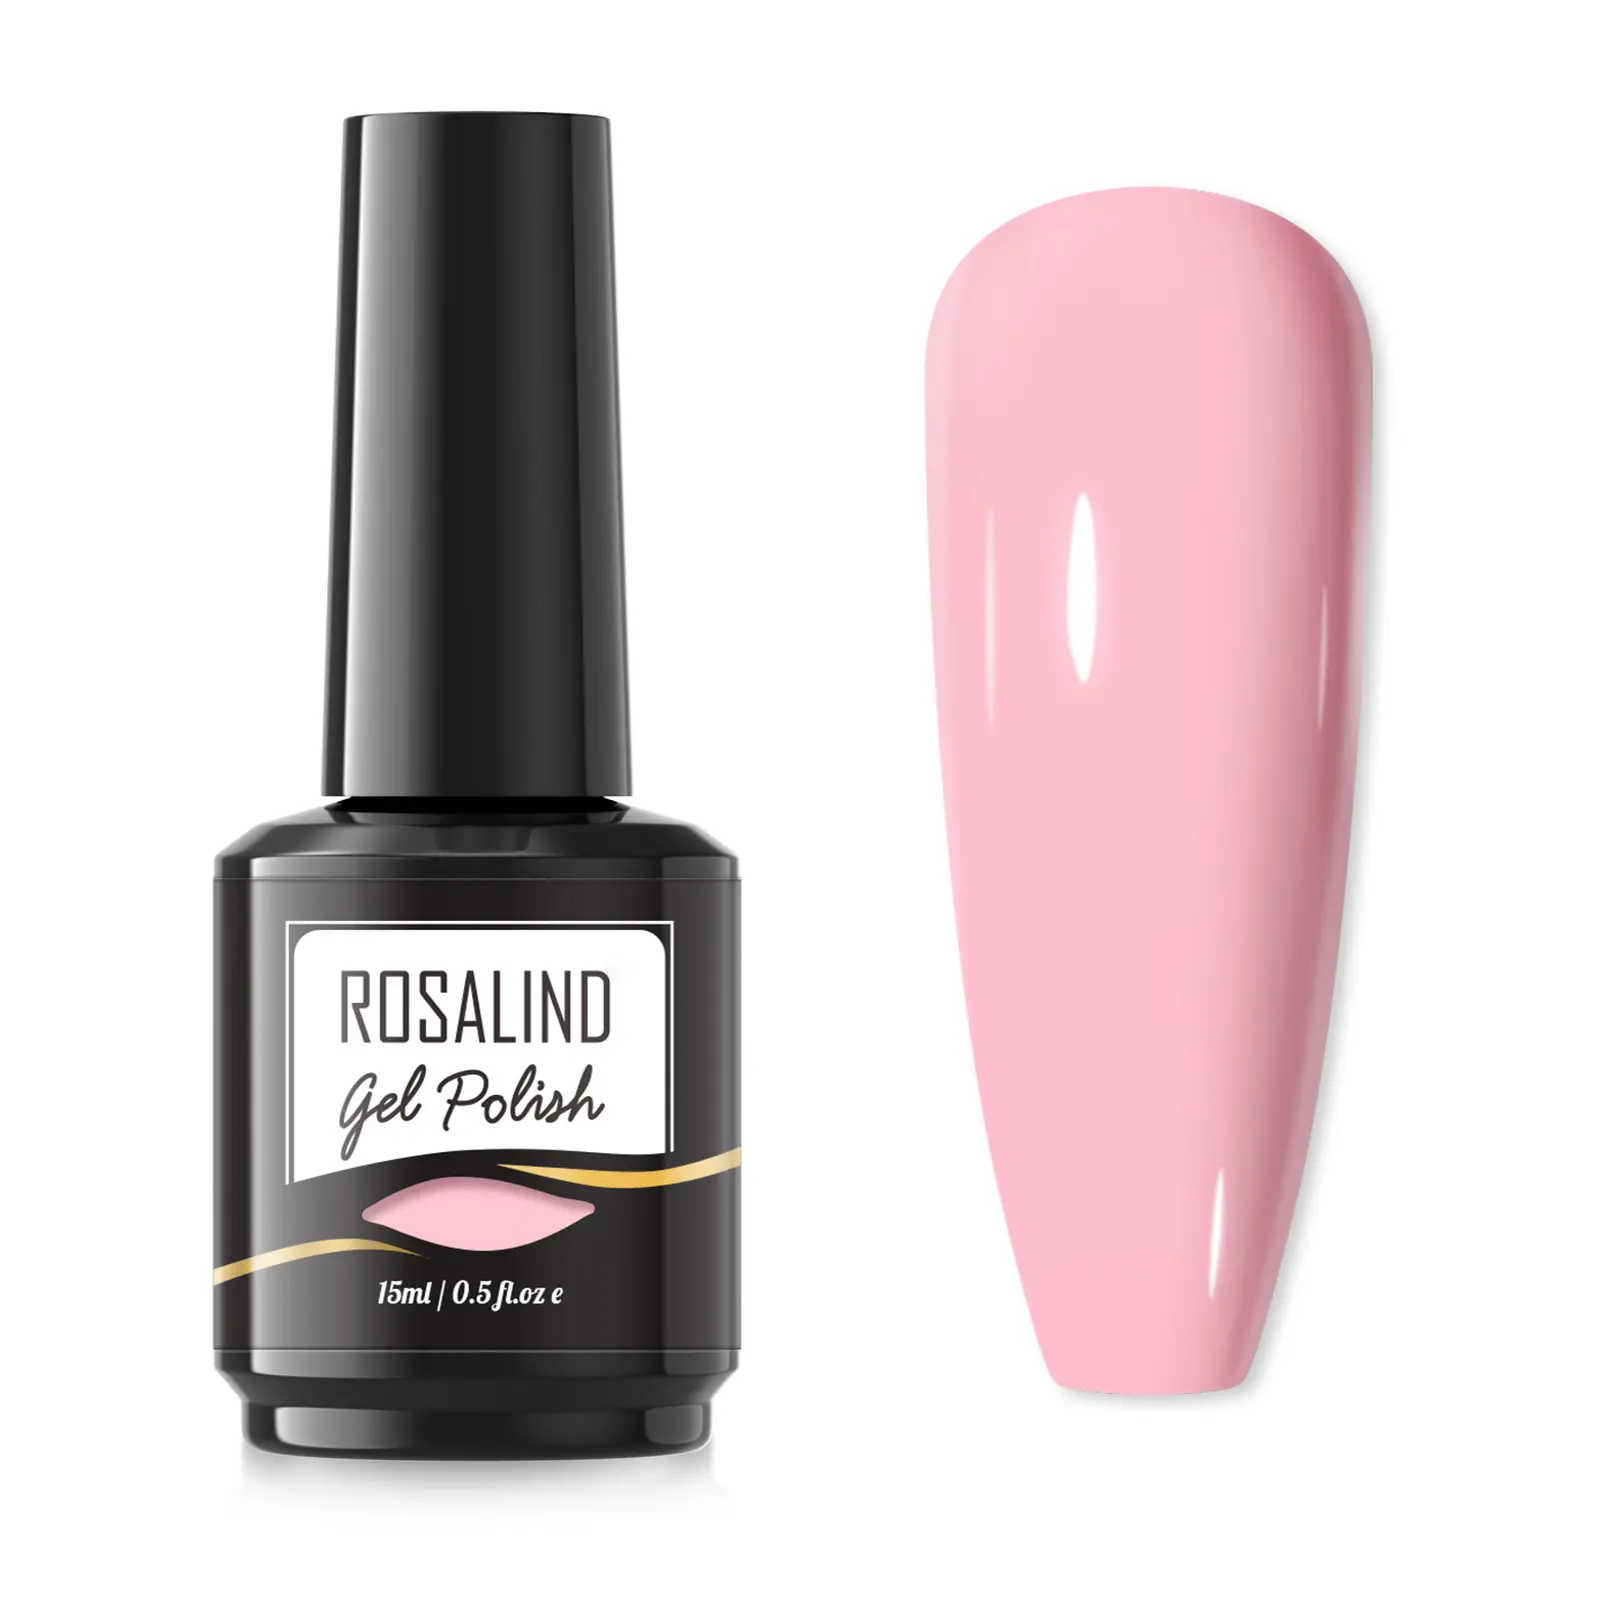 Rosalind nail supplies custom private label 15ml pink gel varnish nail lacquer soak off uv/led lamp poly nail gel polish